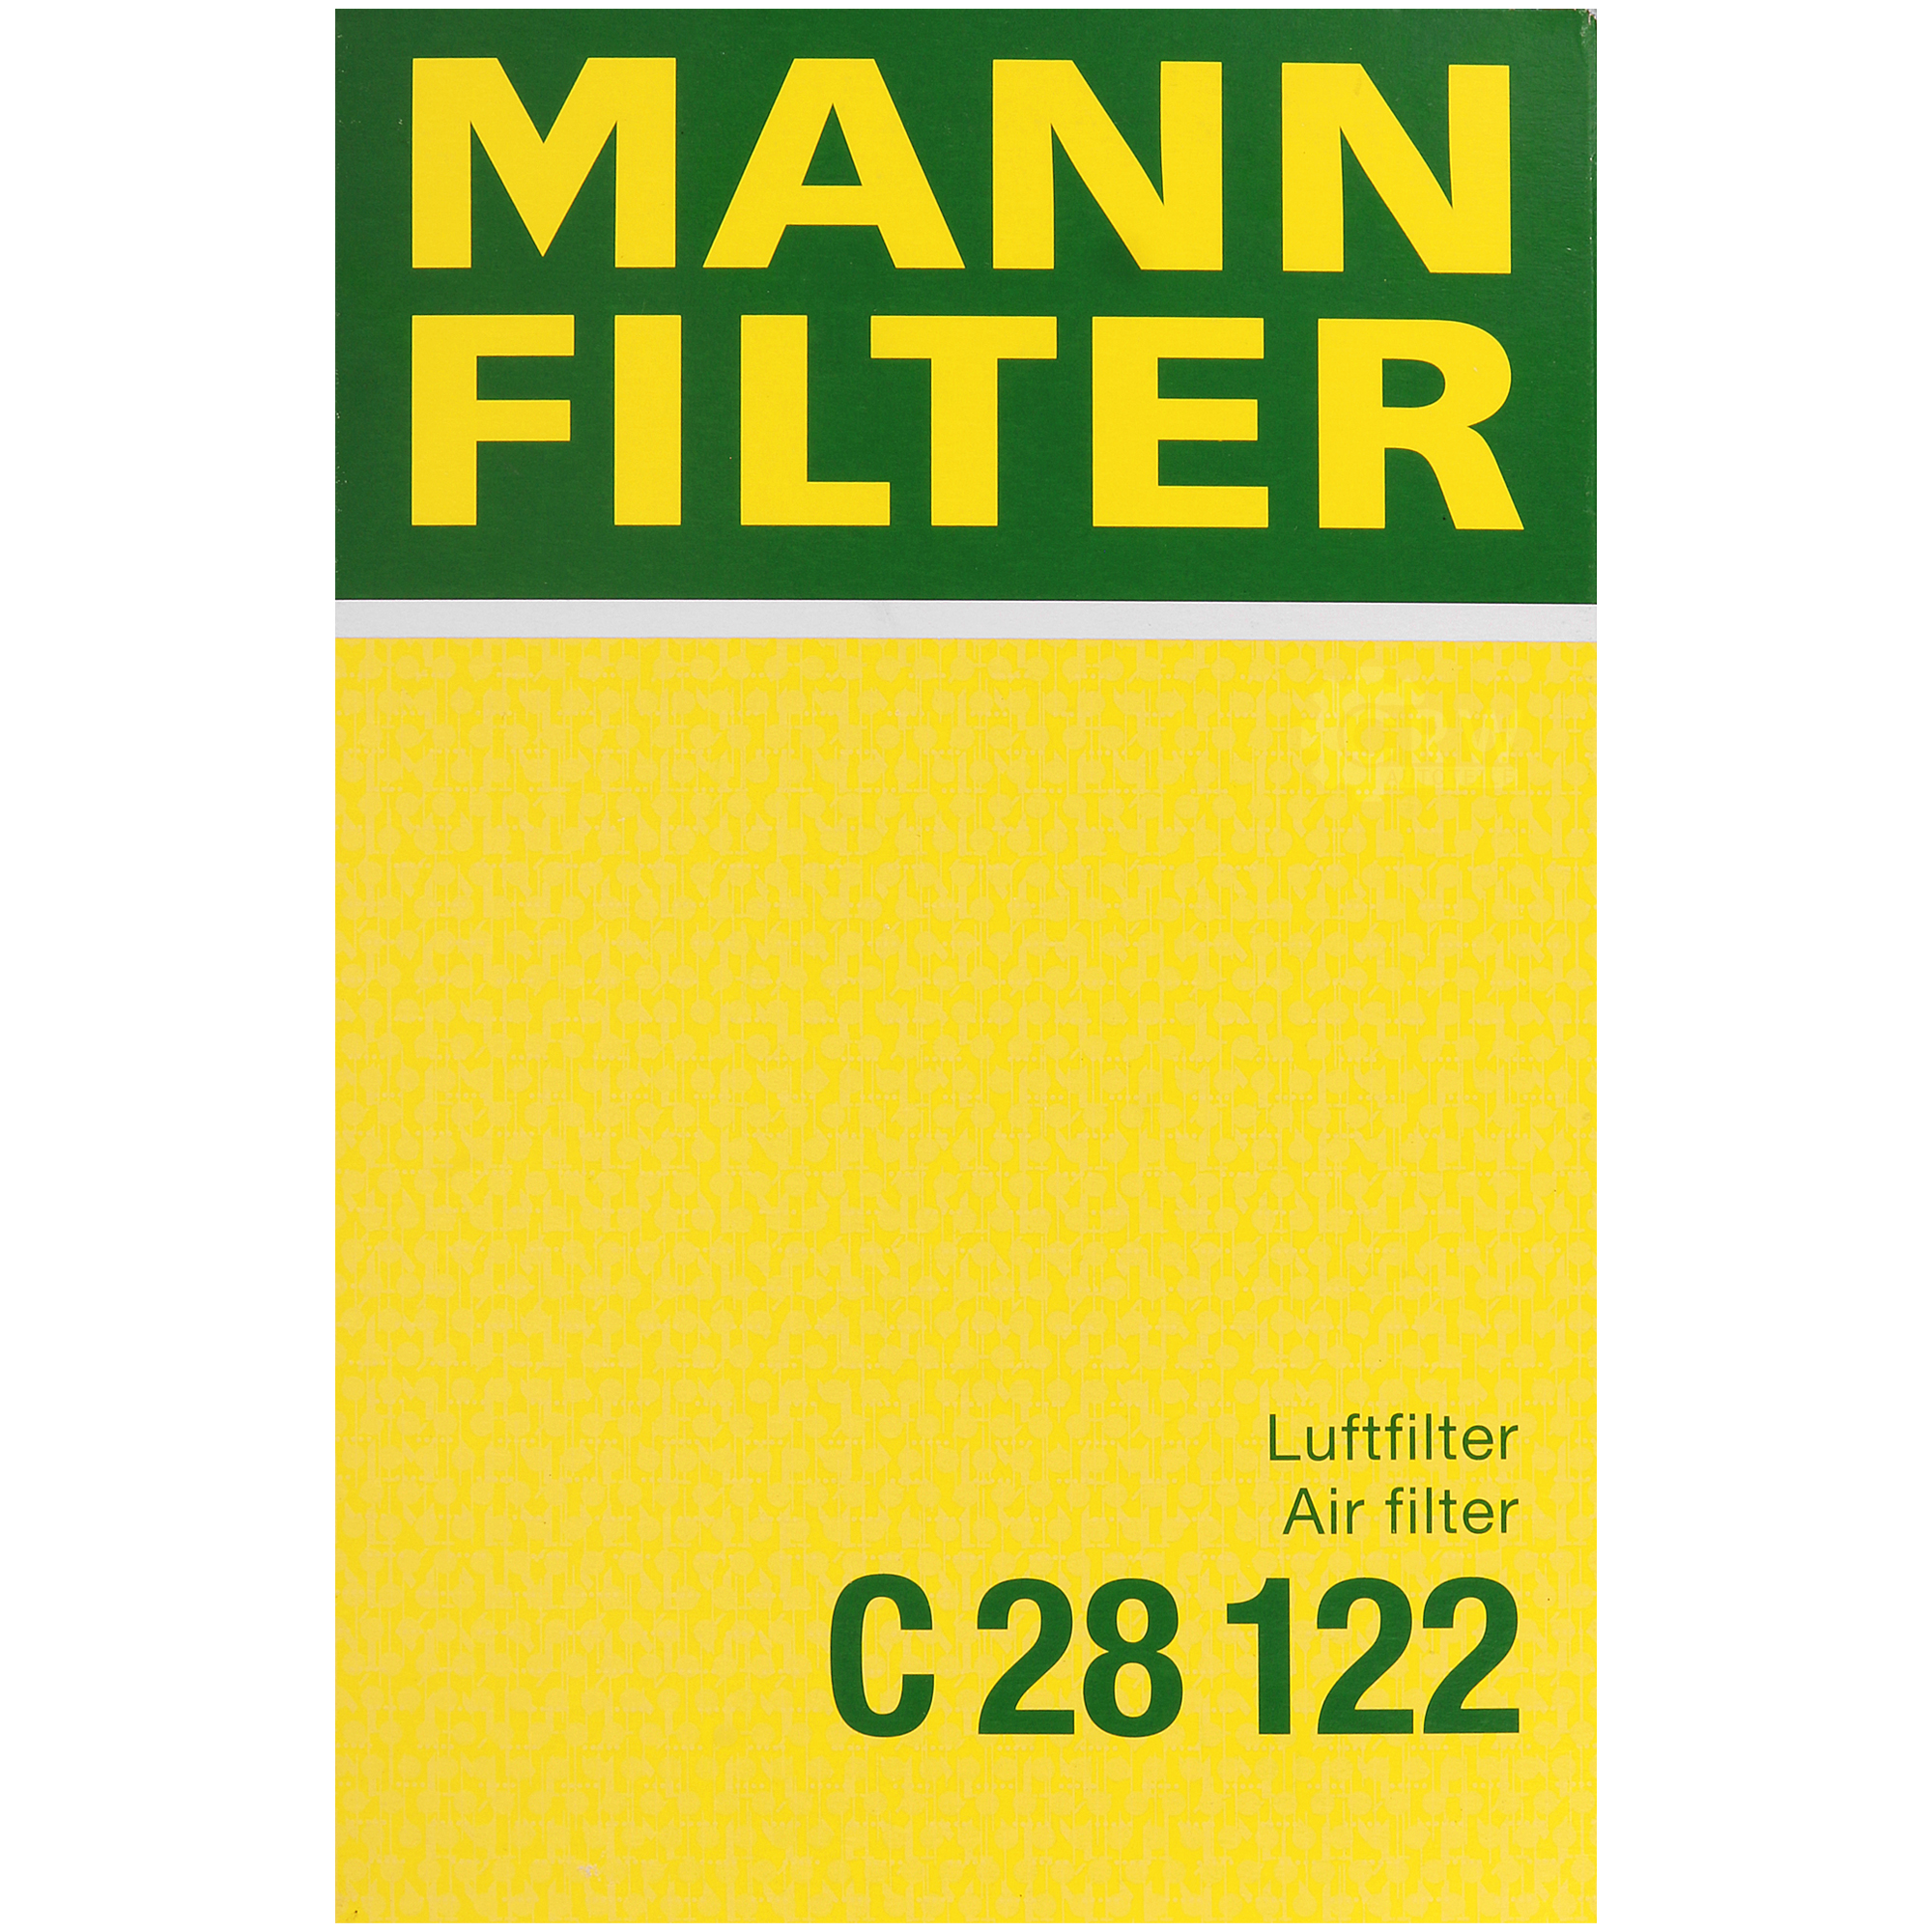 MANN-FILTER Luftfilter für Ford Focus II DA_ HCP DP 1.6 FFS 1.8